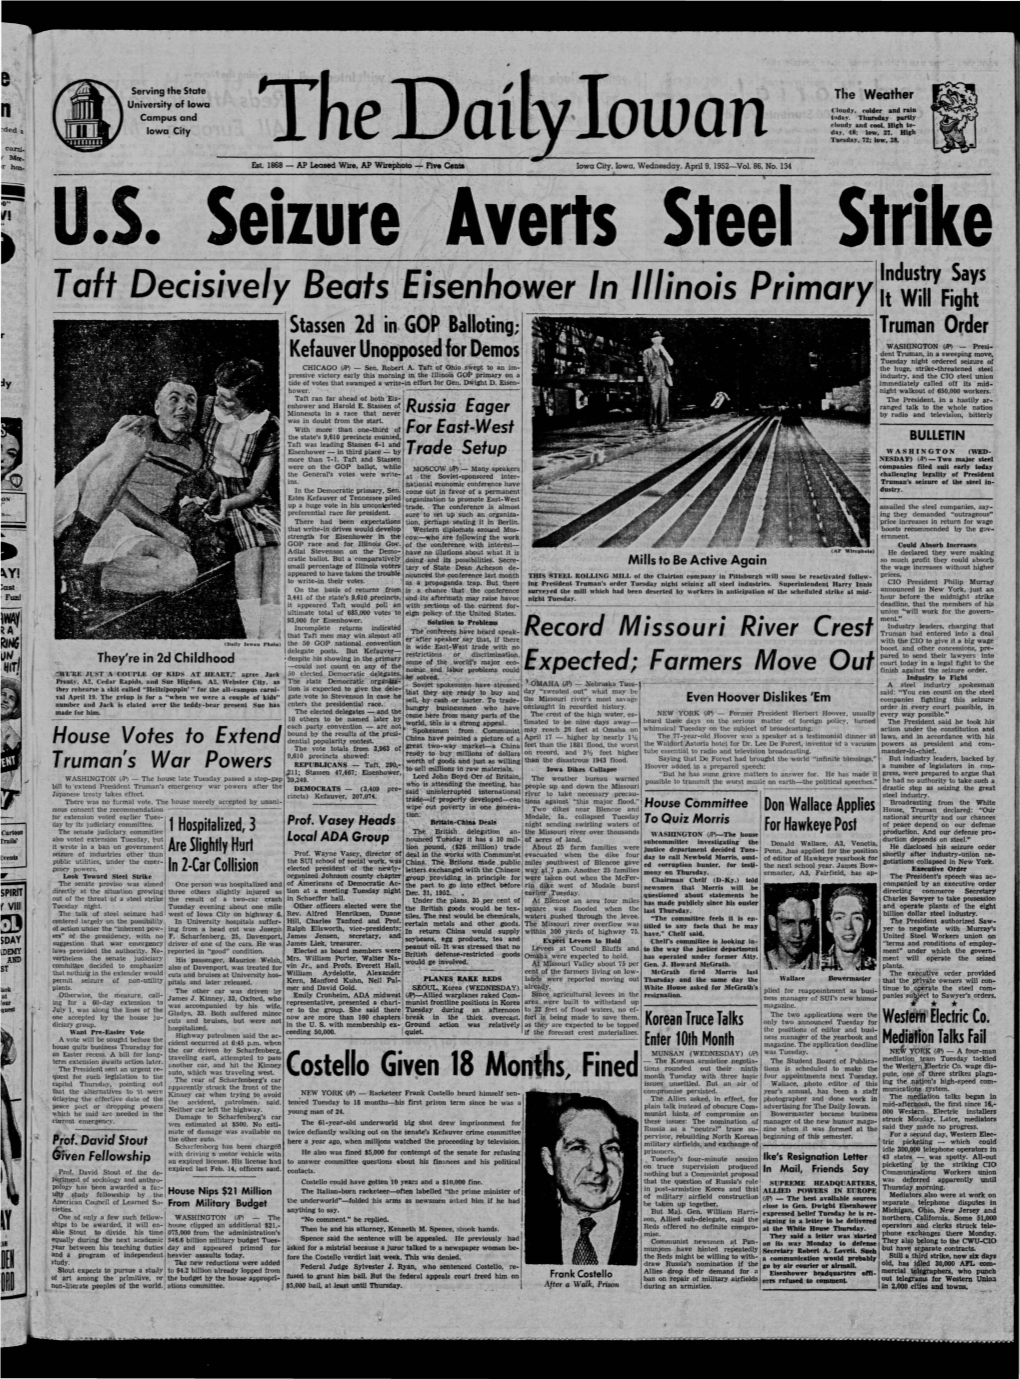 Daily Iowan (Iowa City, Iowa), 1952-04-09